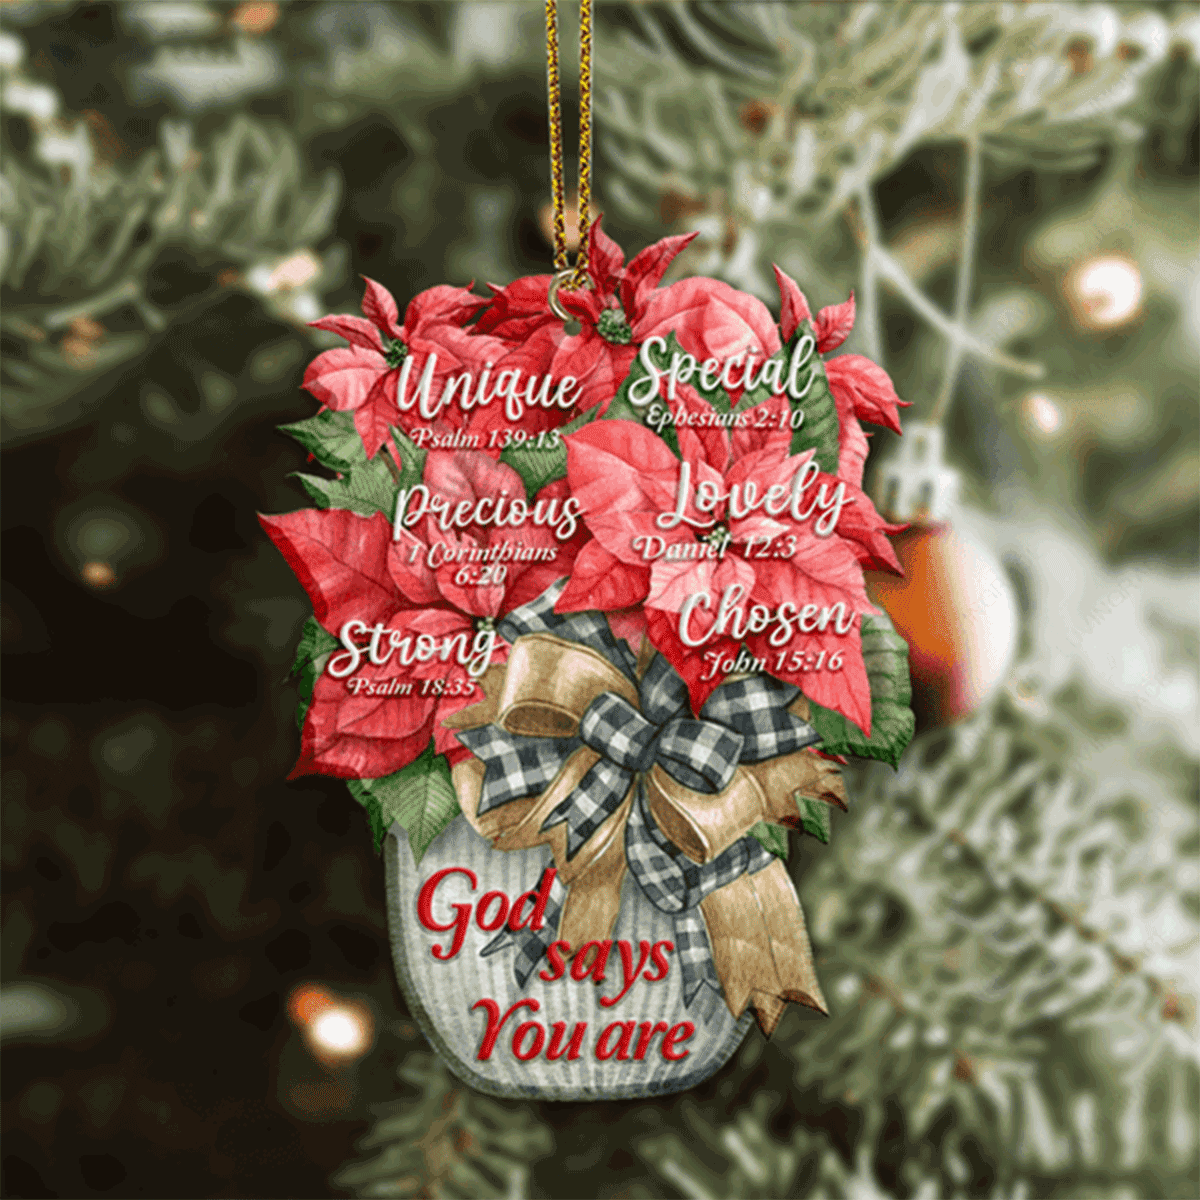 Jesus Acrylic Ornament, Christmas Poinsettia Flower God Says You Are Acrylic Ornament For Christian, God Faith Believers, Holiday Decor